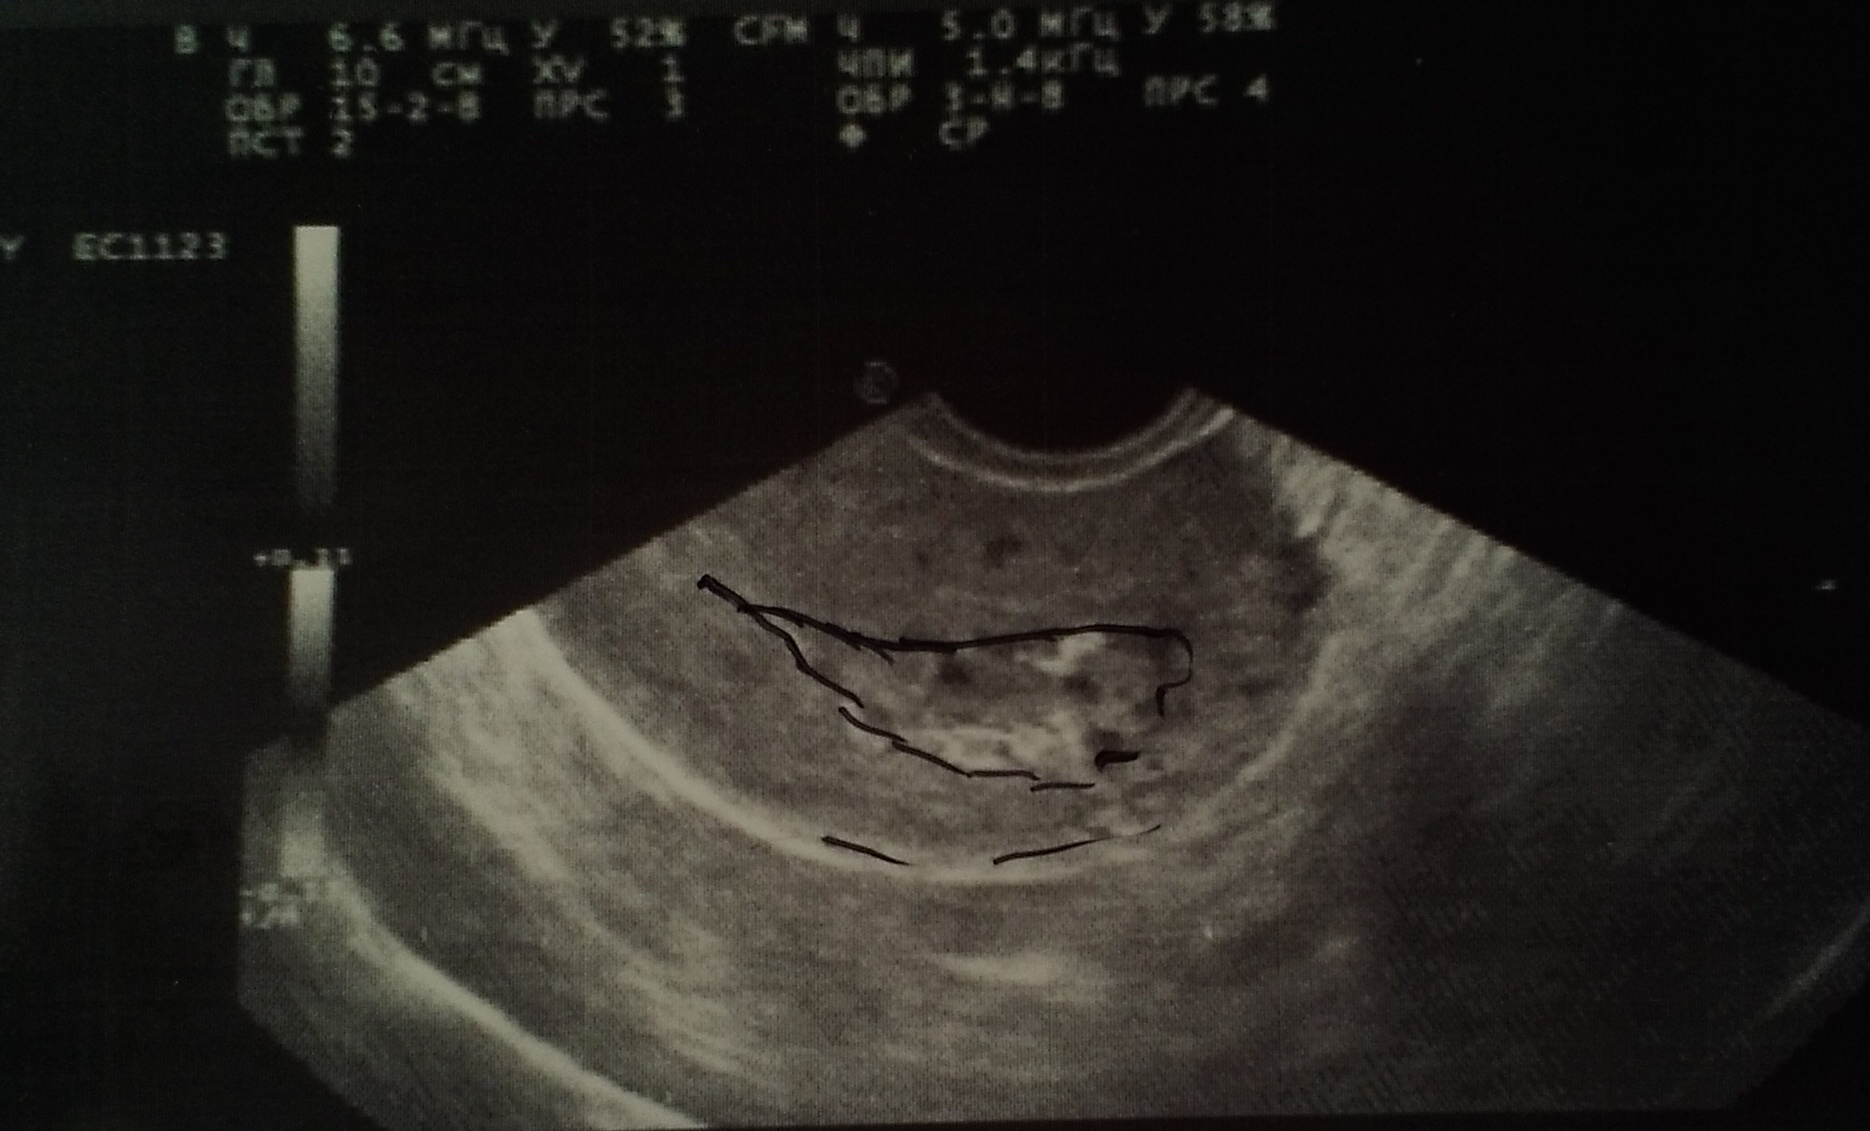 Кровить 6 недель беременности